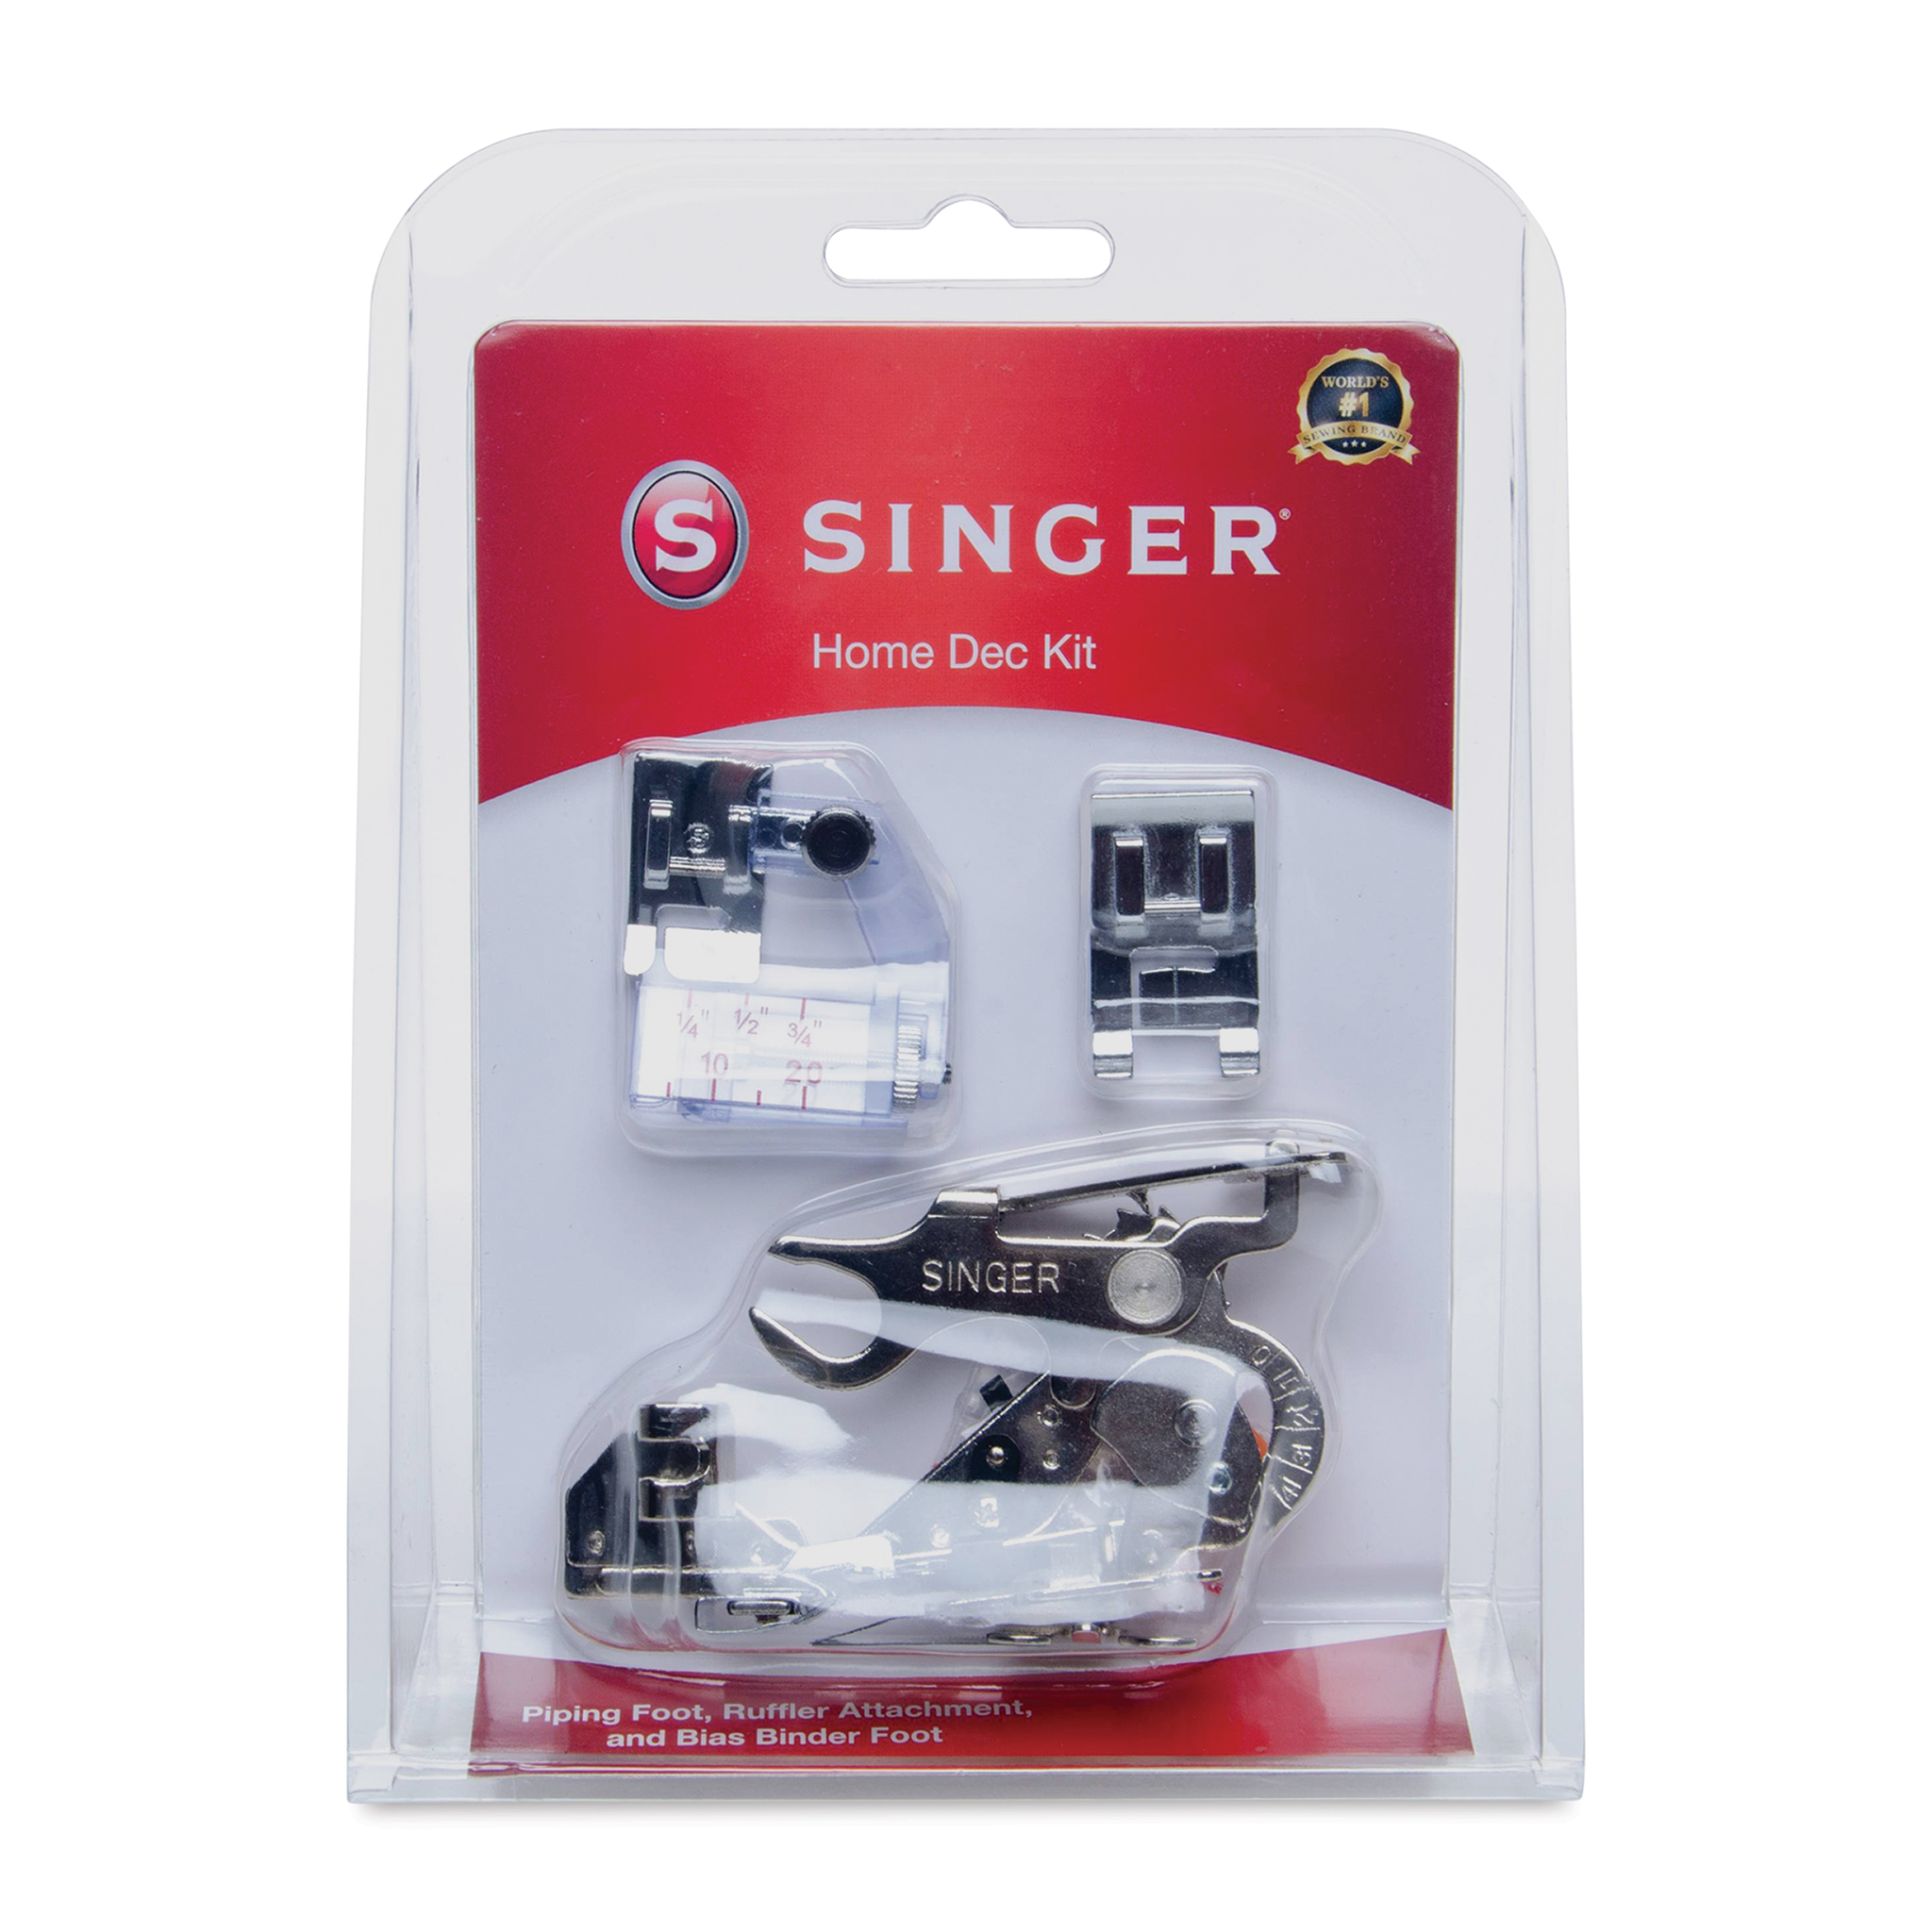 SINGER Home Decor Presser Foot Kit